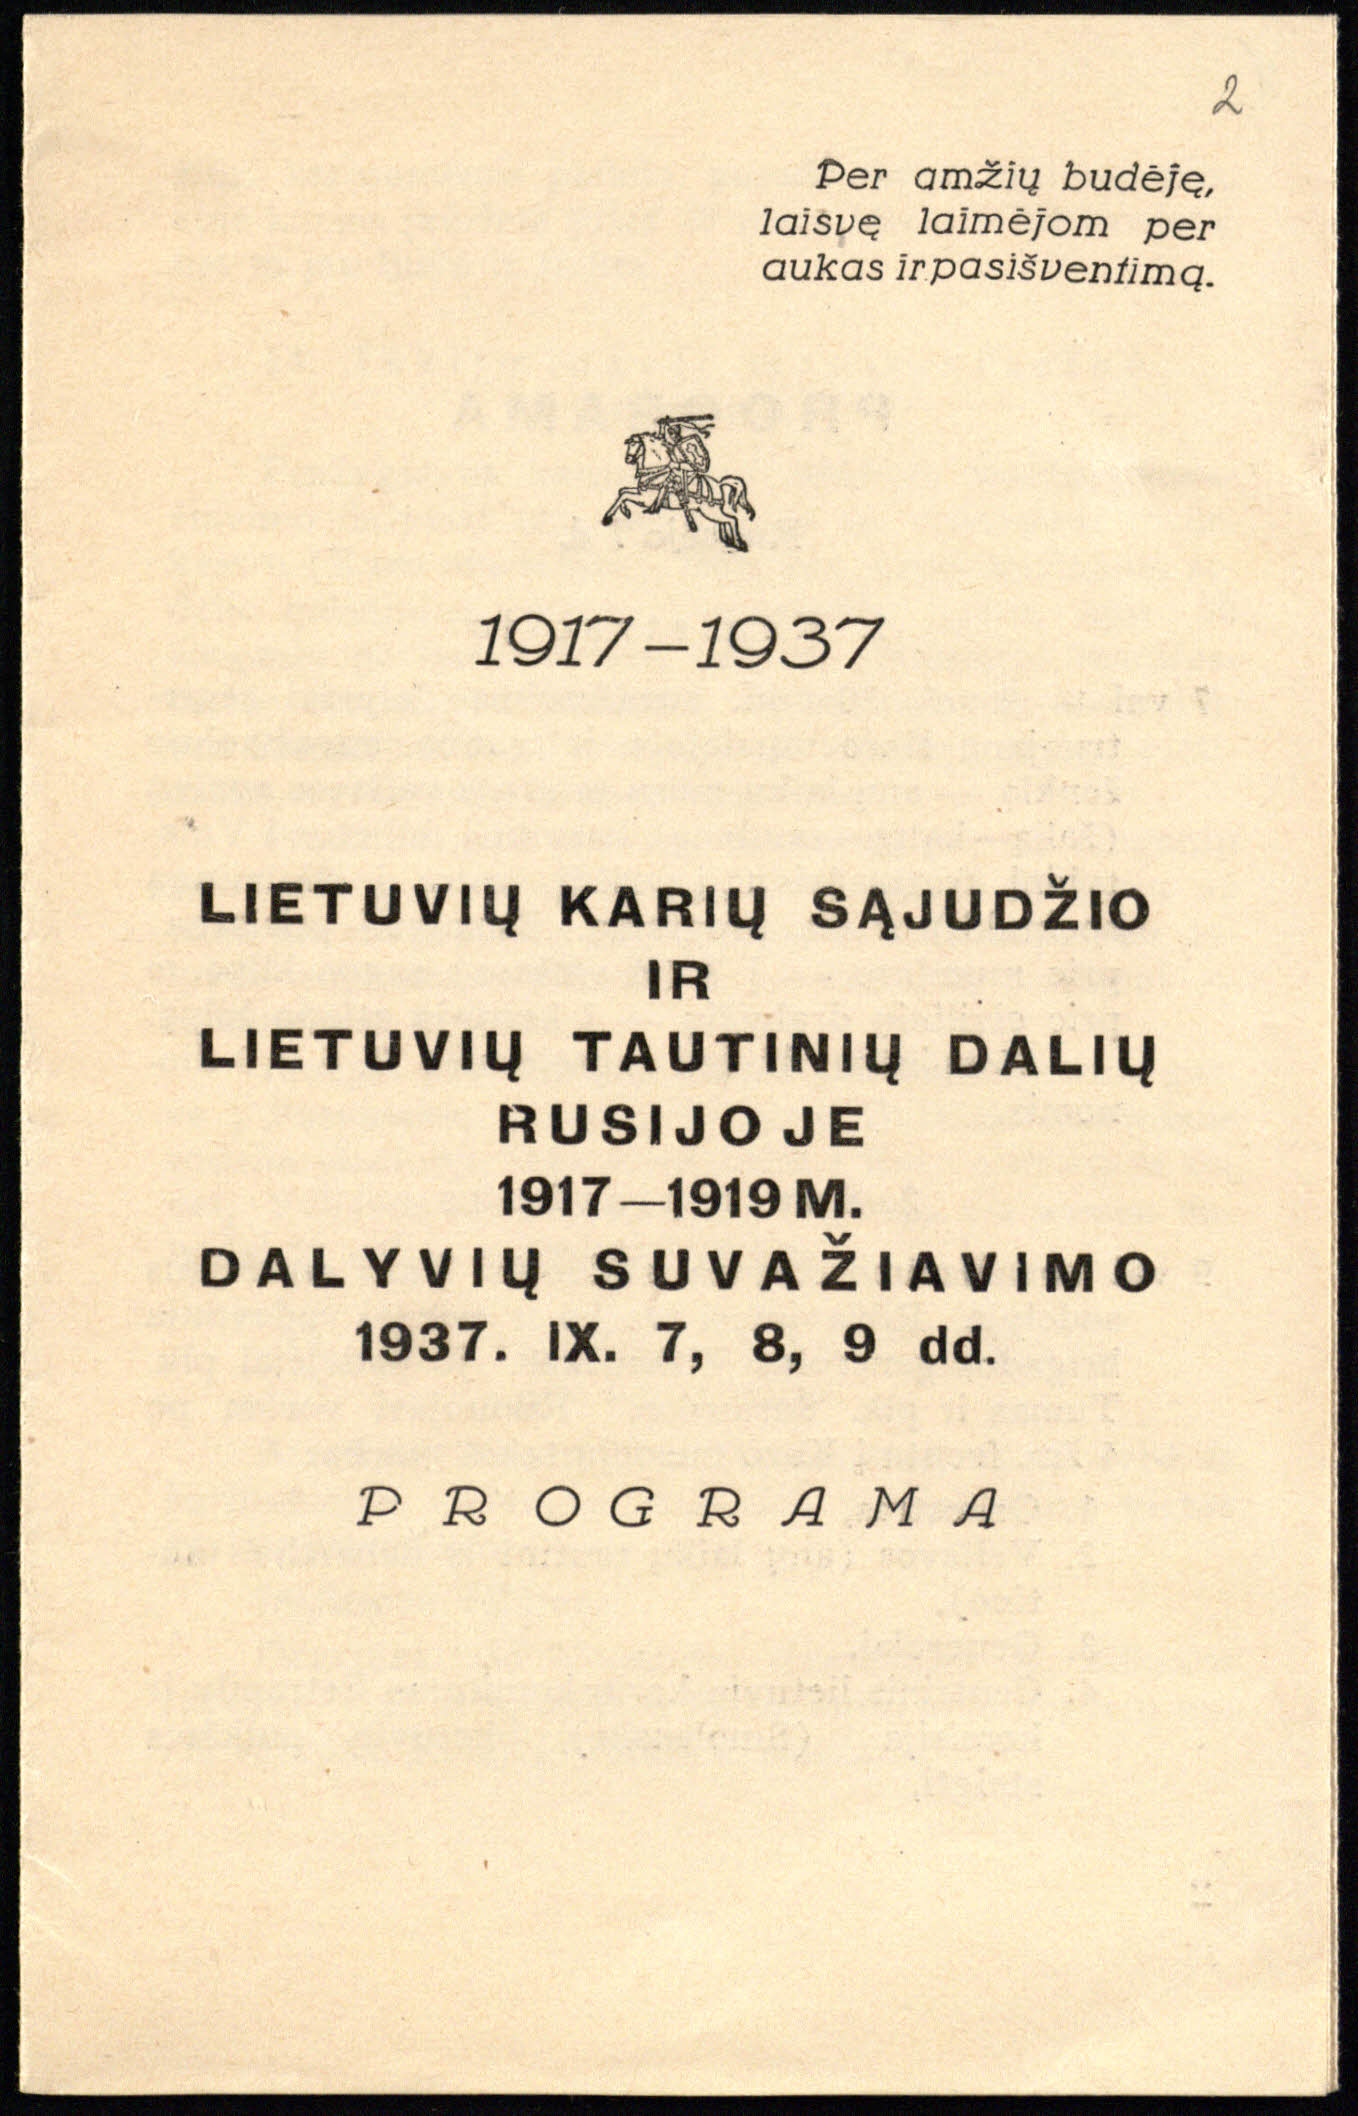 Lietuvių karių sąjūdžio ir lietuvių tautinių dalių  Rusijoje 1917–1919 m. dalyvių suvažiavimo 1937 rugsėjo 7–9 d. programa